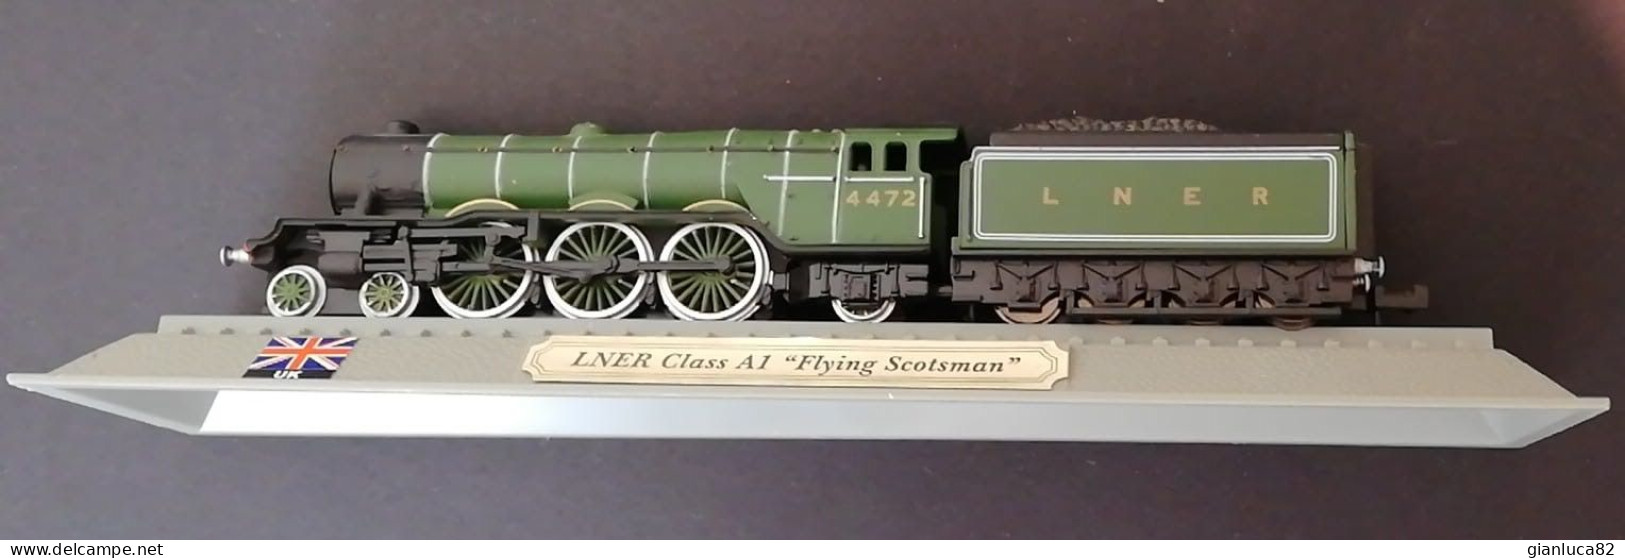 Locomotiva LNER Class A1 Flying Scotsman Come Nuovo (342) Come Da Foto Dimensioni Modellino 14,5x2,5x2 Cm - Loks